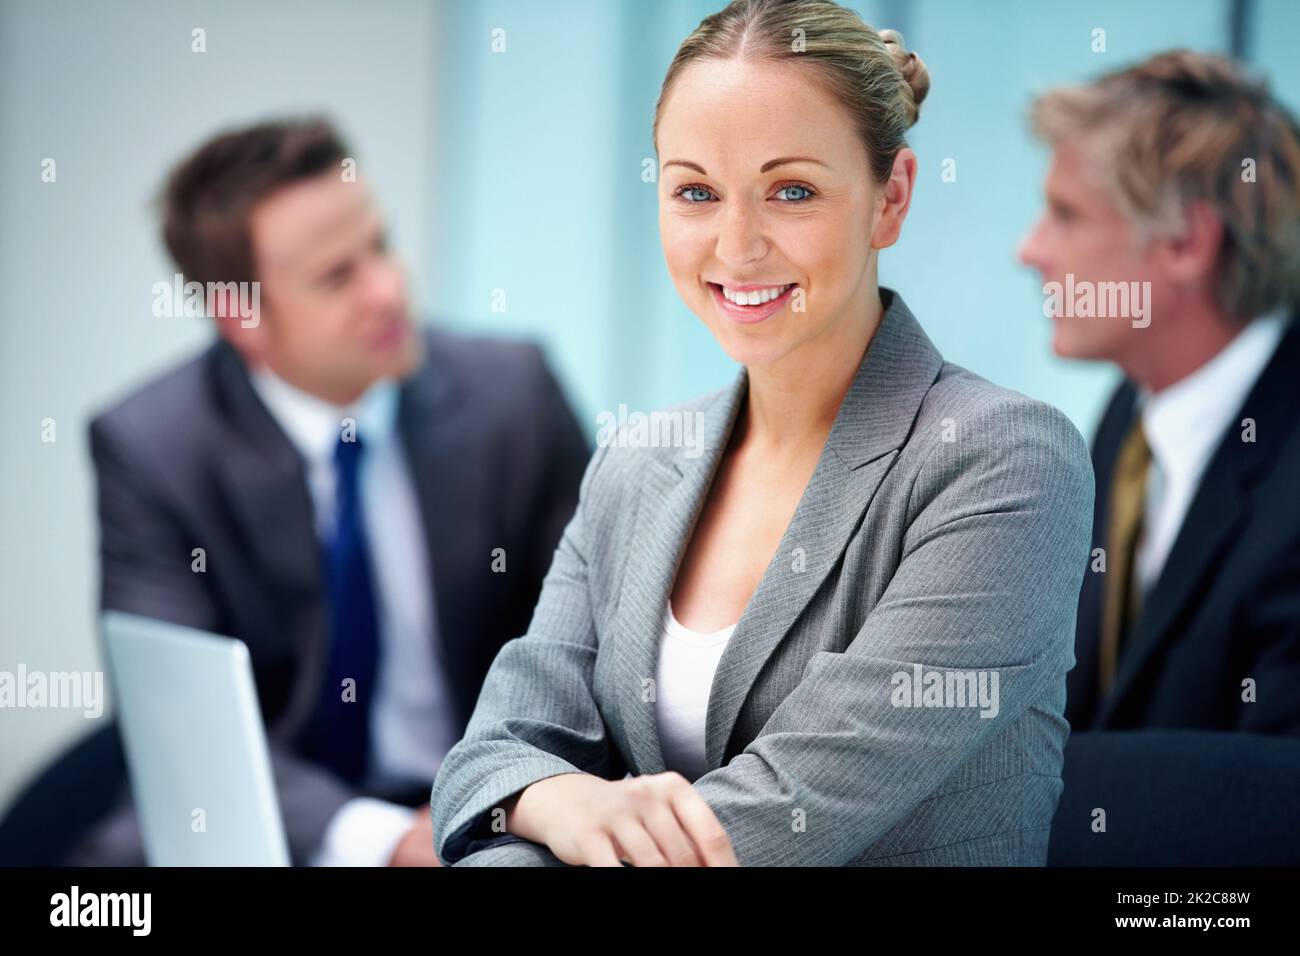 Lächelnde Führungskraft mit Geschäftsleuten. Porträt einer schönen Führungskraft mit einem Lächeln und Geschäftsleuten im Hintergrund. Stockfoto